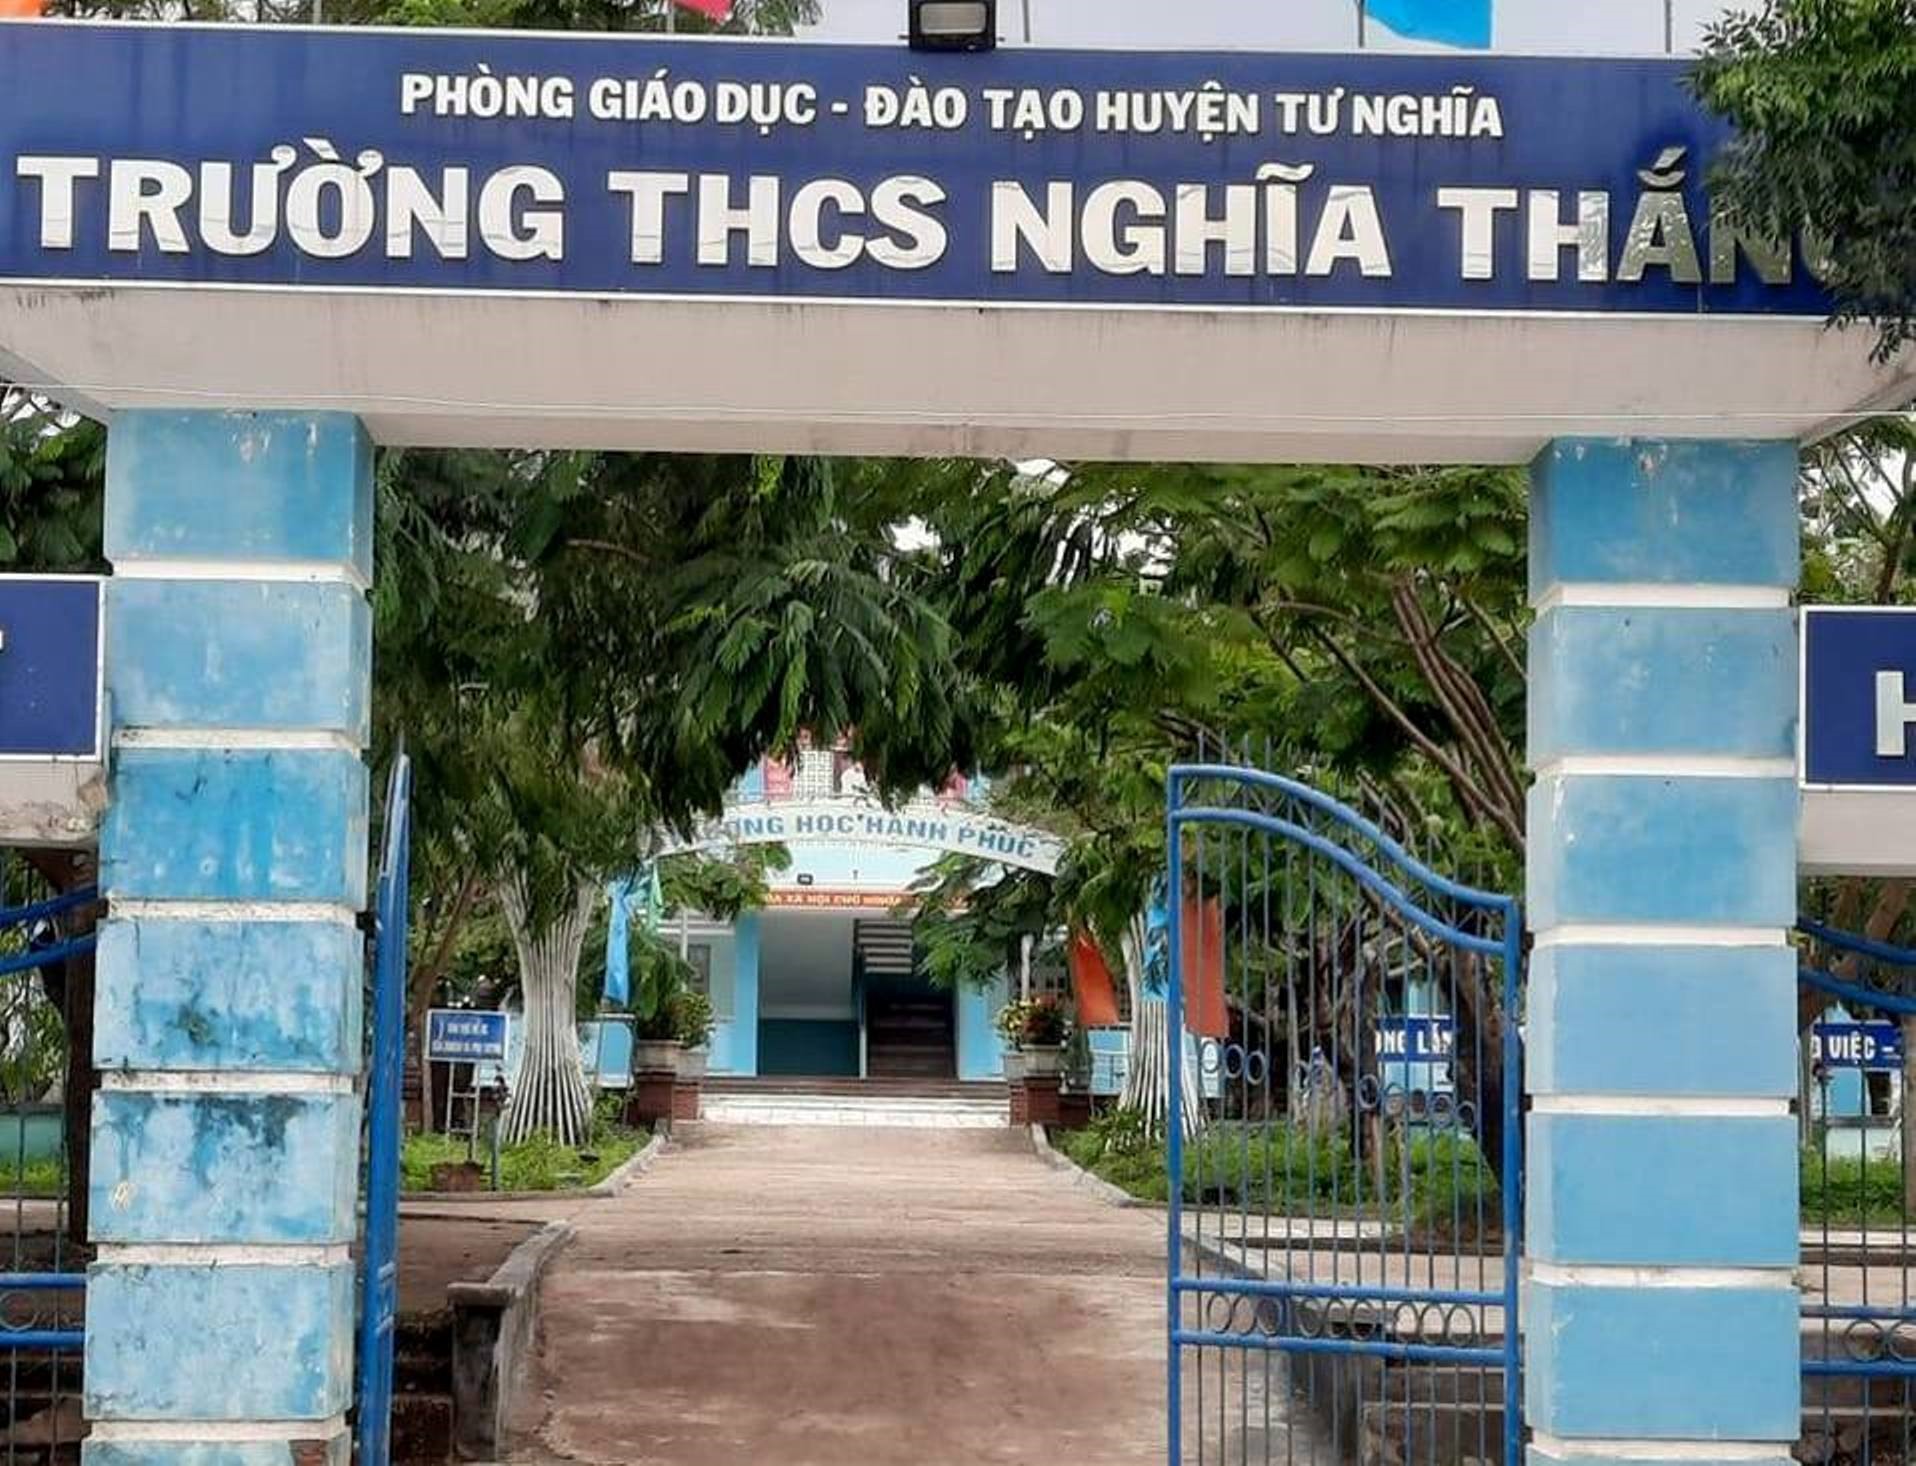 Trường THCS Nghĩa Thắng, xã Nghĩa Thắng, huyện Tư Nghĩa nơi xảy ra vụ việc. Ảnh: Ngọc Viên